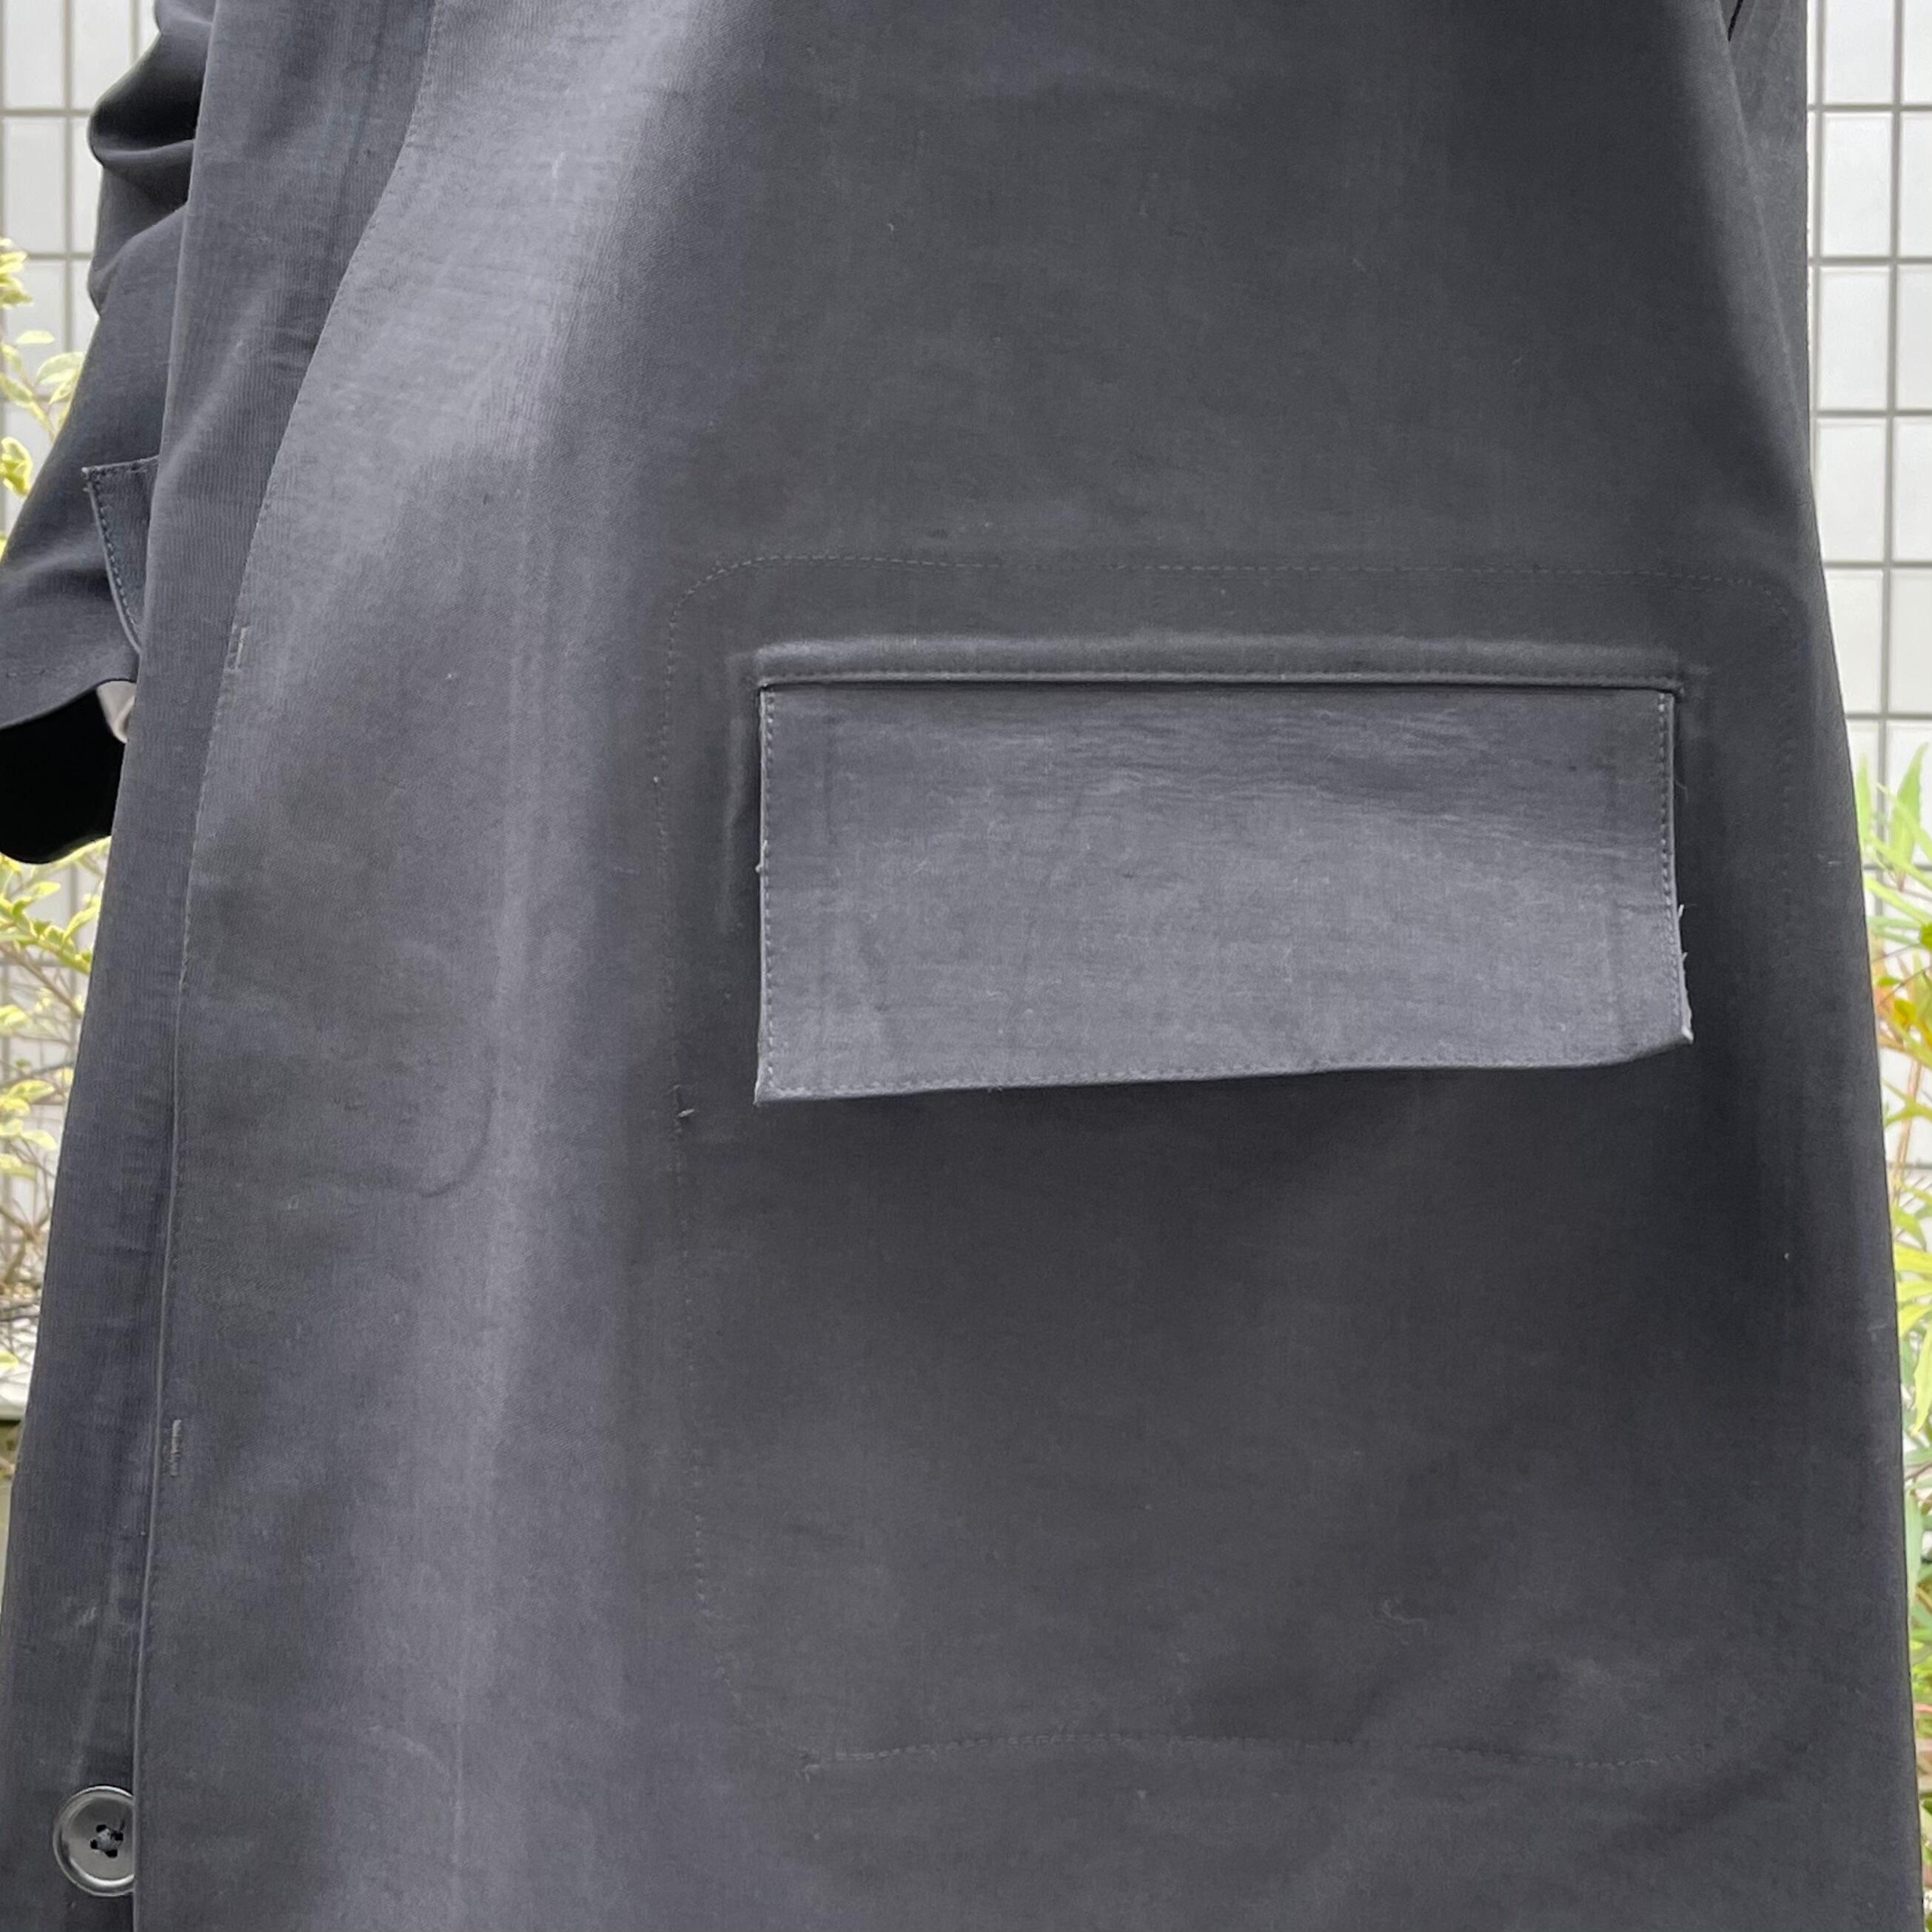 50's〜 British Railways Macintoshes coat ブリティッシュレイルウェイズ イギリス国鉄 マッキントッシュコート  黒マッキン